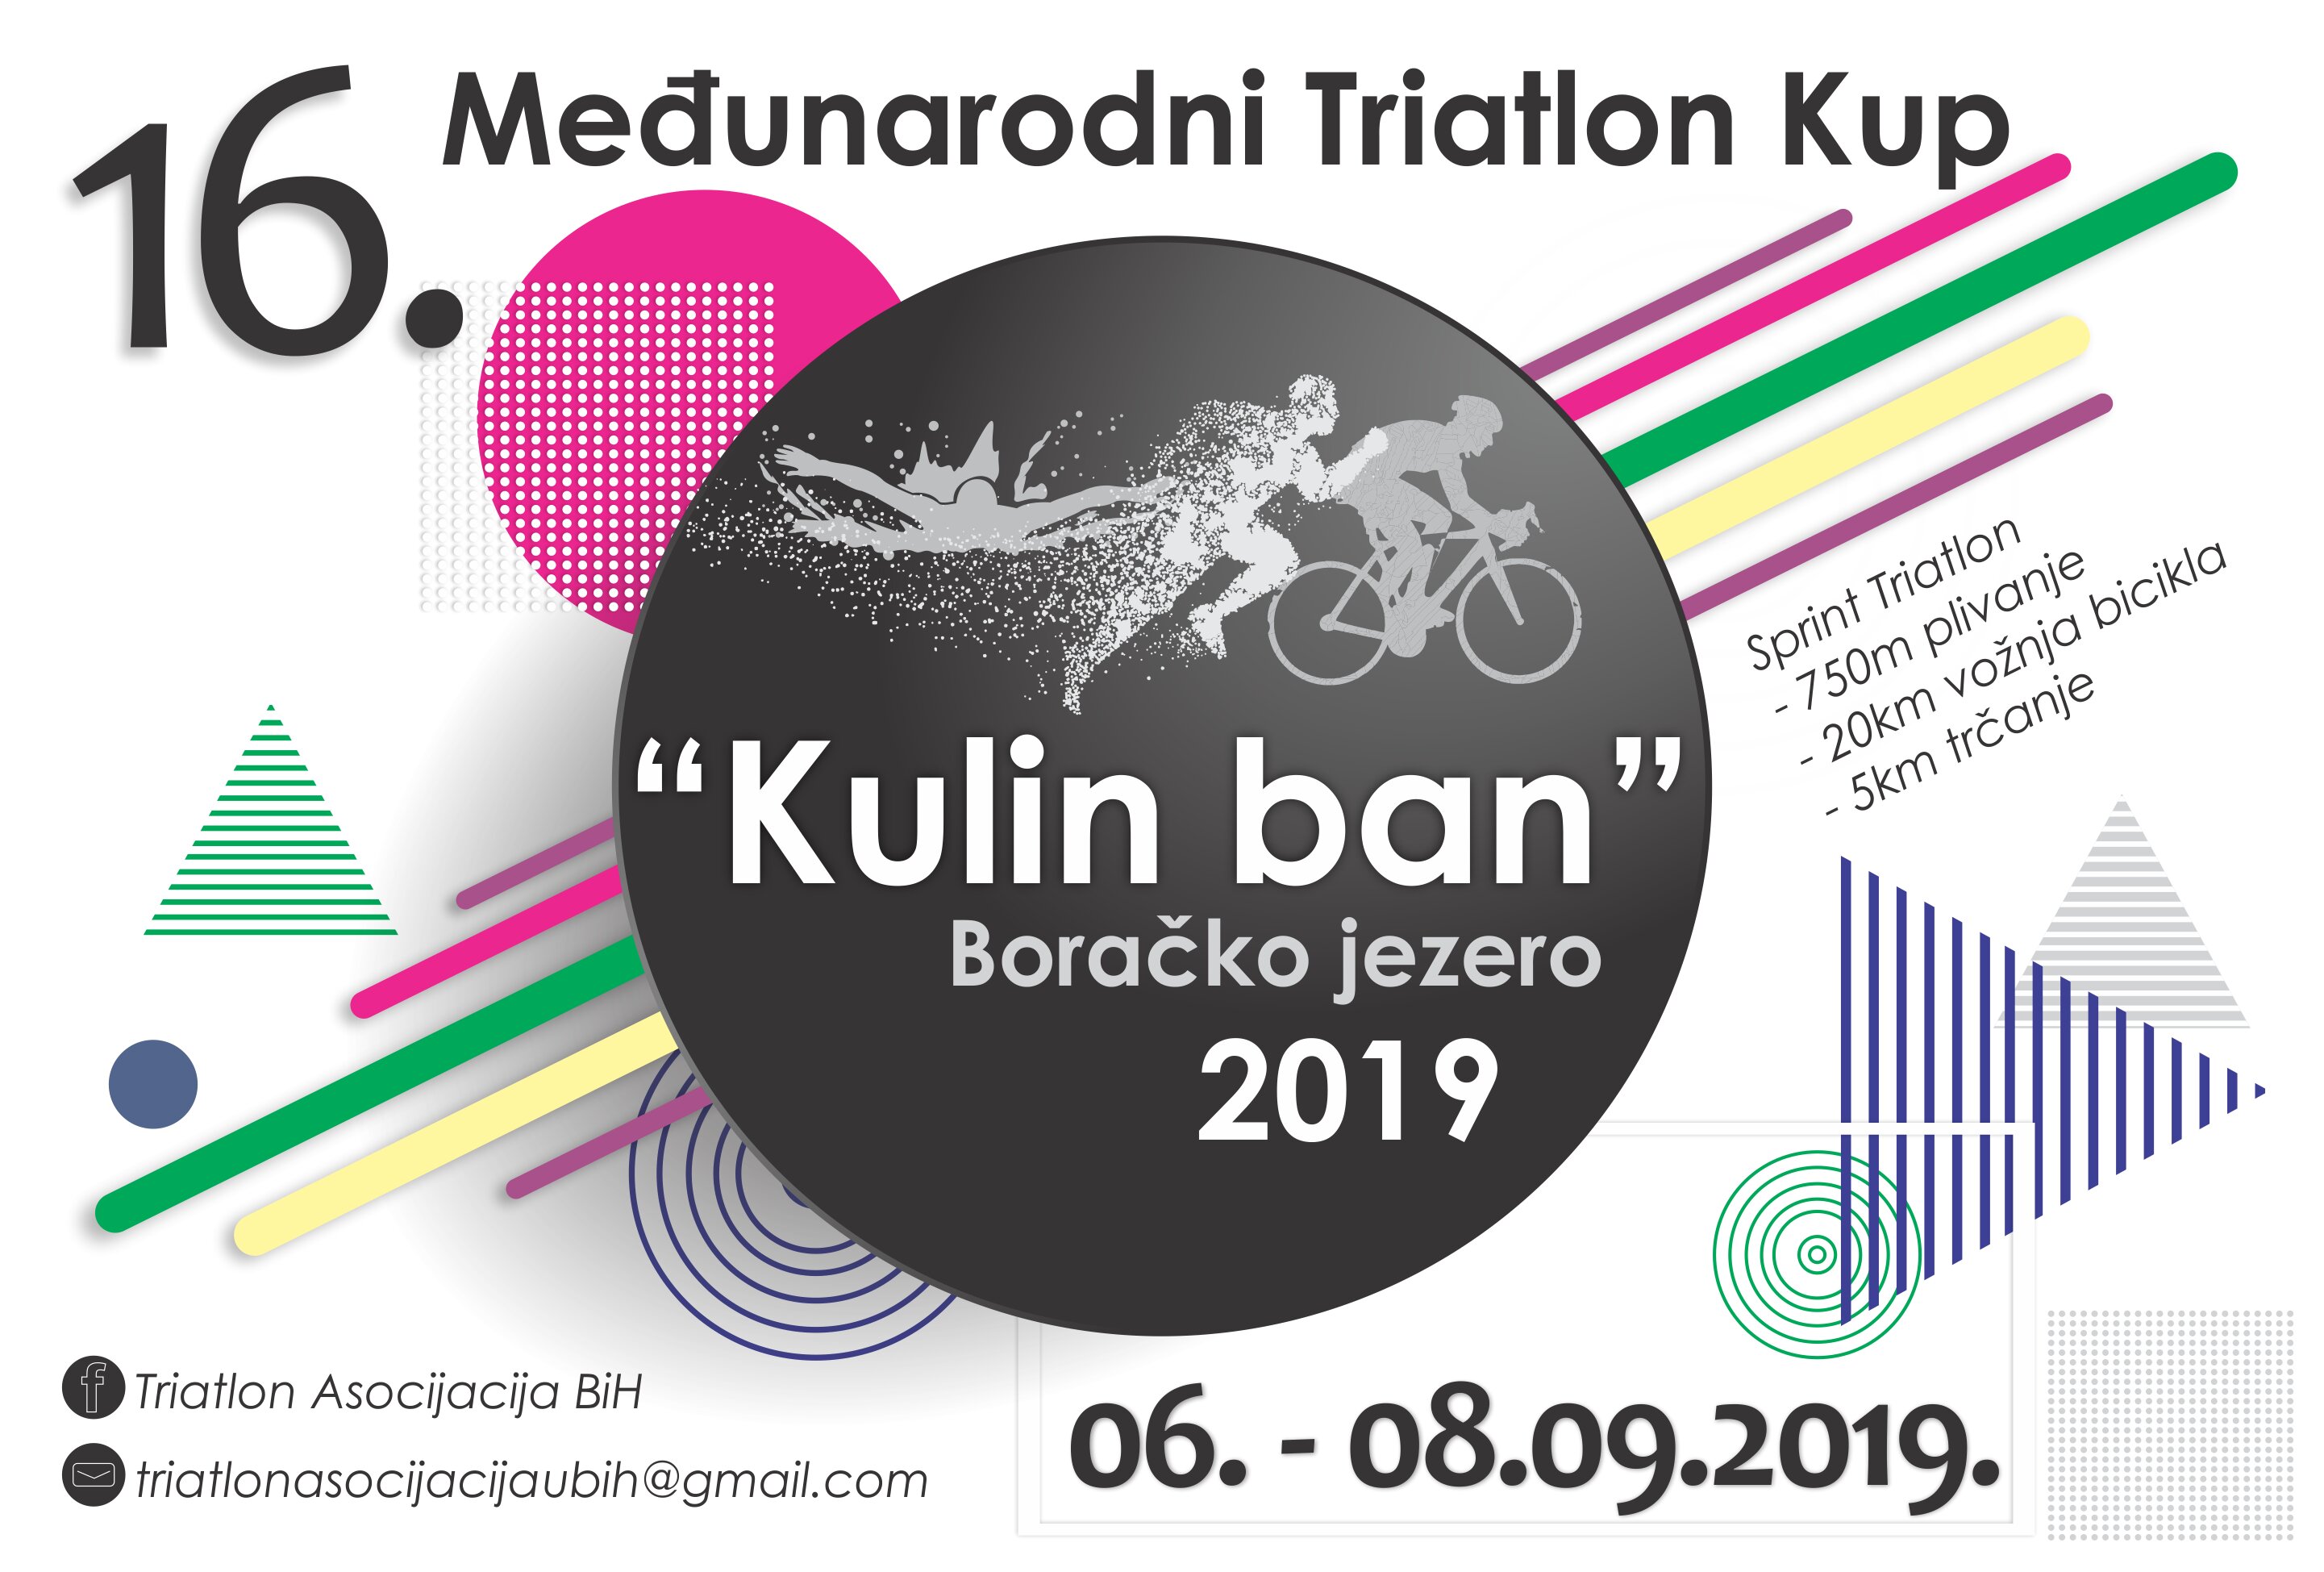 Triatlon Kup Kulin ban na Boračkom jezeru od 6. do 8. septembra